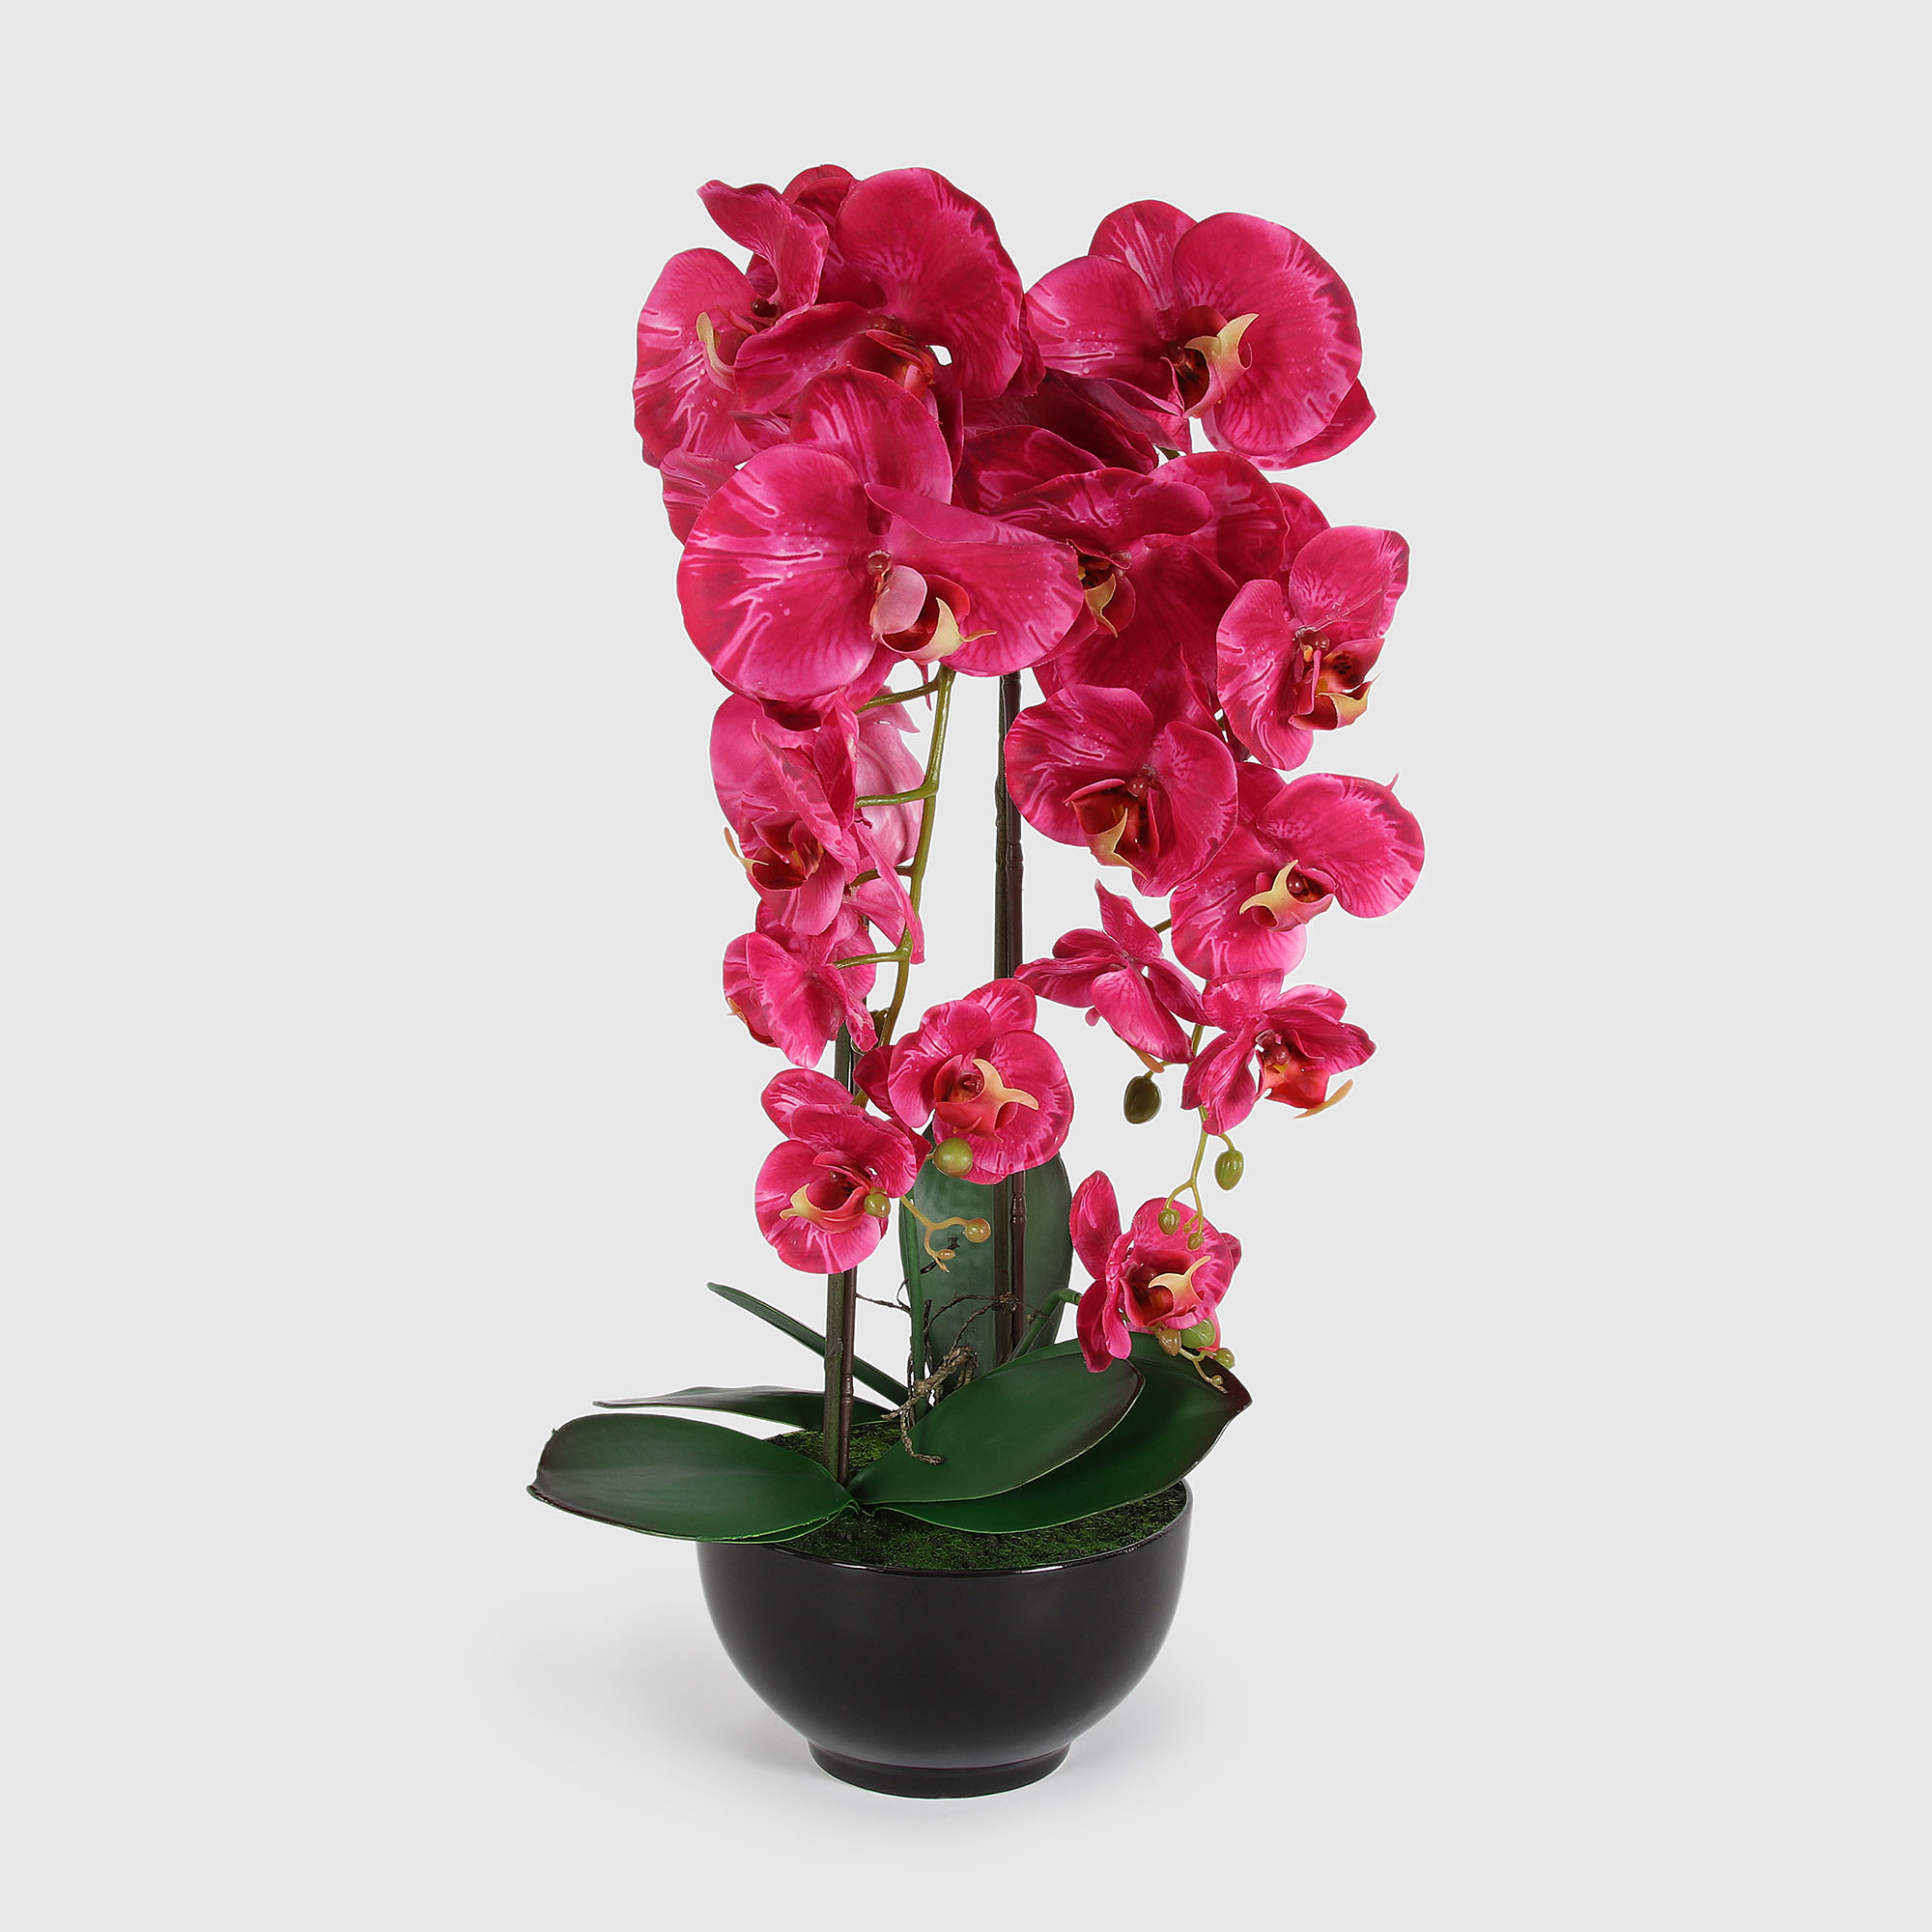 Цветок искусственный Fuzhou Light в горшке орхидея кармин 4 цвета, 62 см ок искусственный конэко о орхидея в декоративном кашпо 57 см